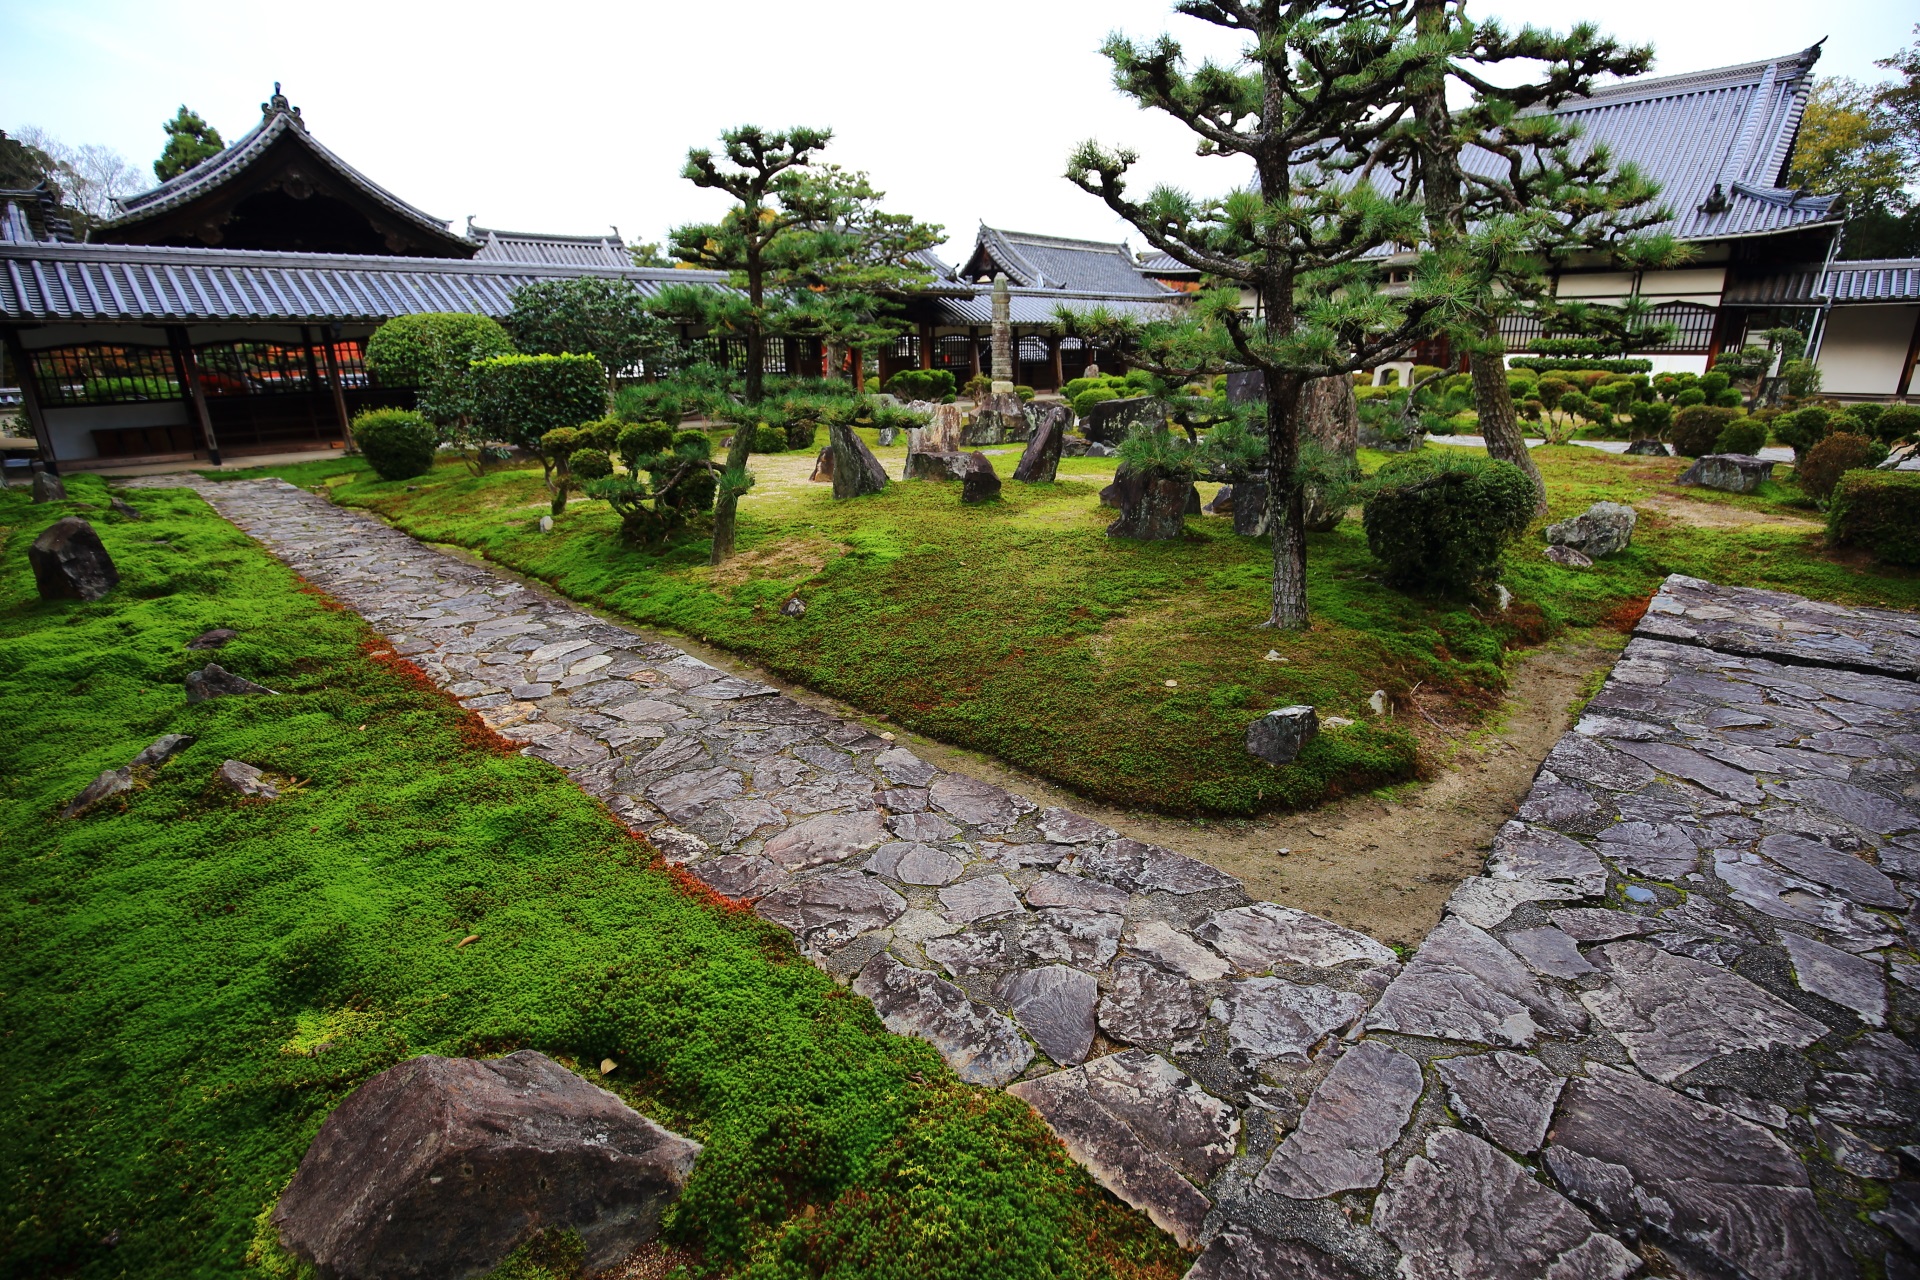 大きな岩や松の木なども配された興聖寺の穏やかさの中にも力強さが感じられる庭園